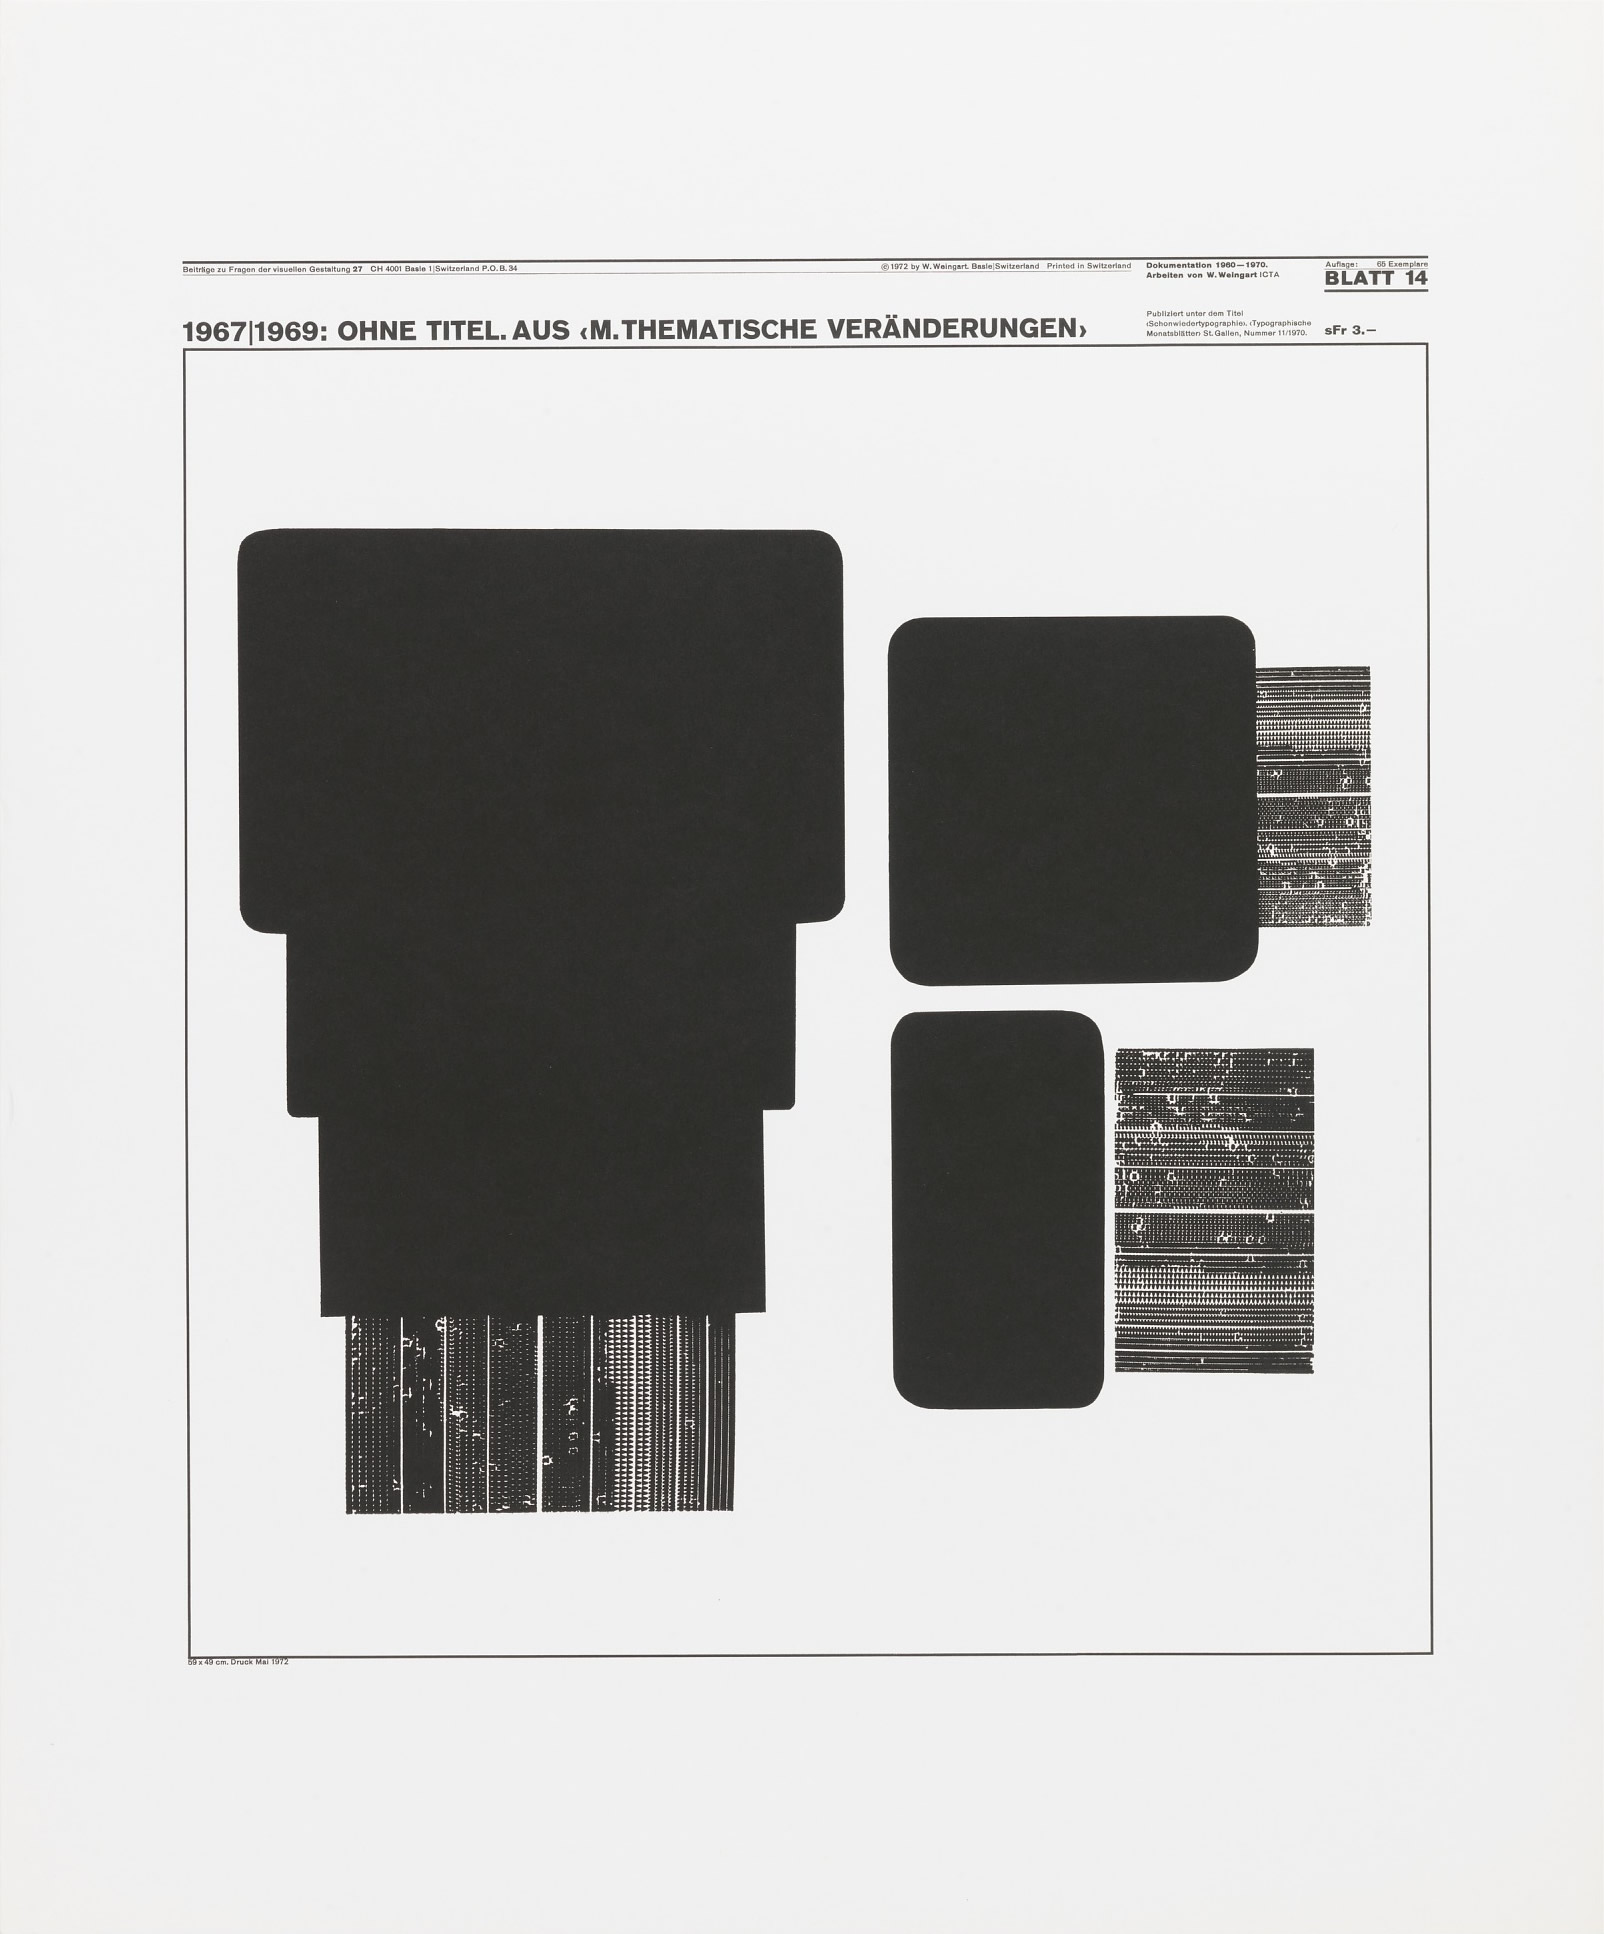 Wolfgang Weingart: Beiträge zu Fragen der visuellen Gestaltung 27, Blatt 14 from the portfolio Dokumentation 1960—1970, Arbeiten von W. Weingart, Designed 1967-69. Lithograph. (58.9 x 49 cm)